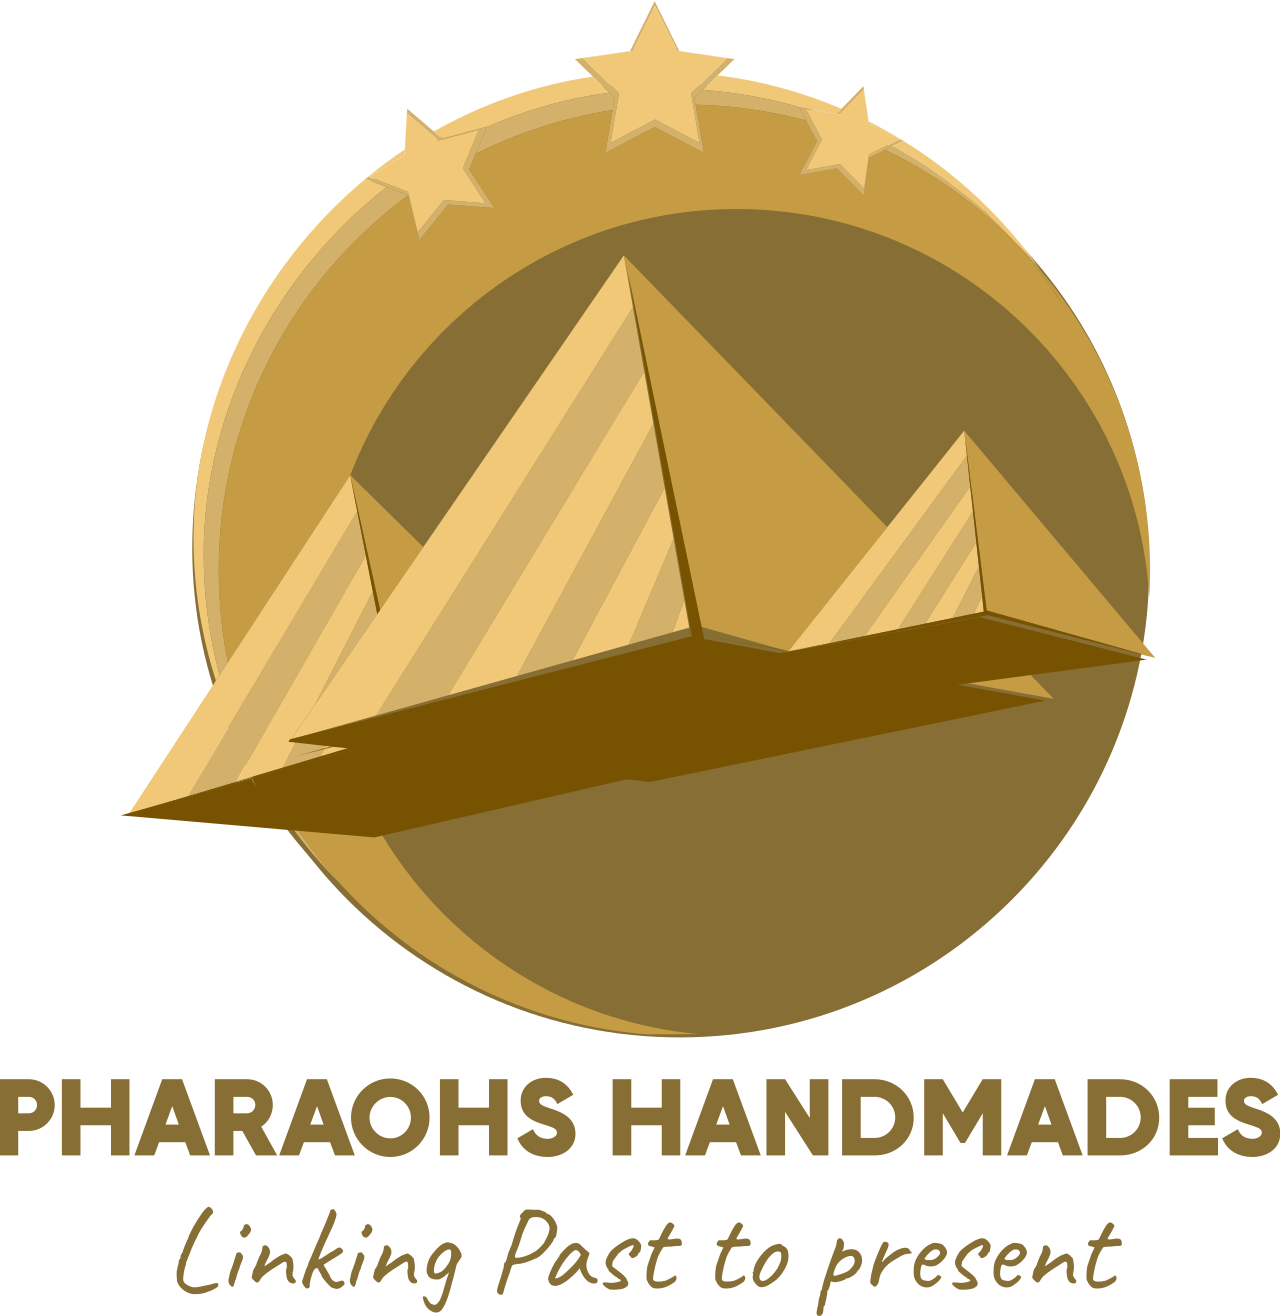 Pharaohs Handmades's logo